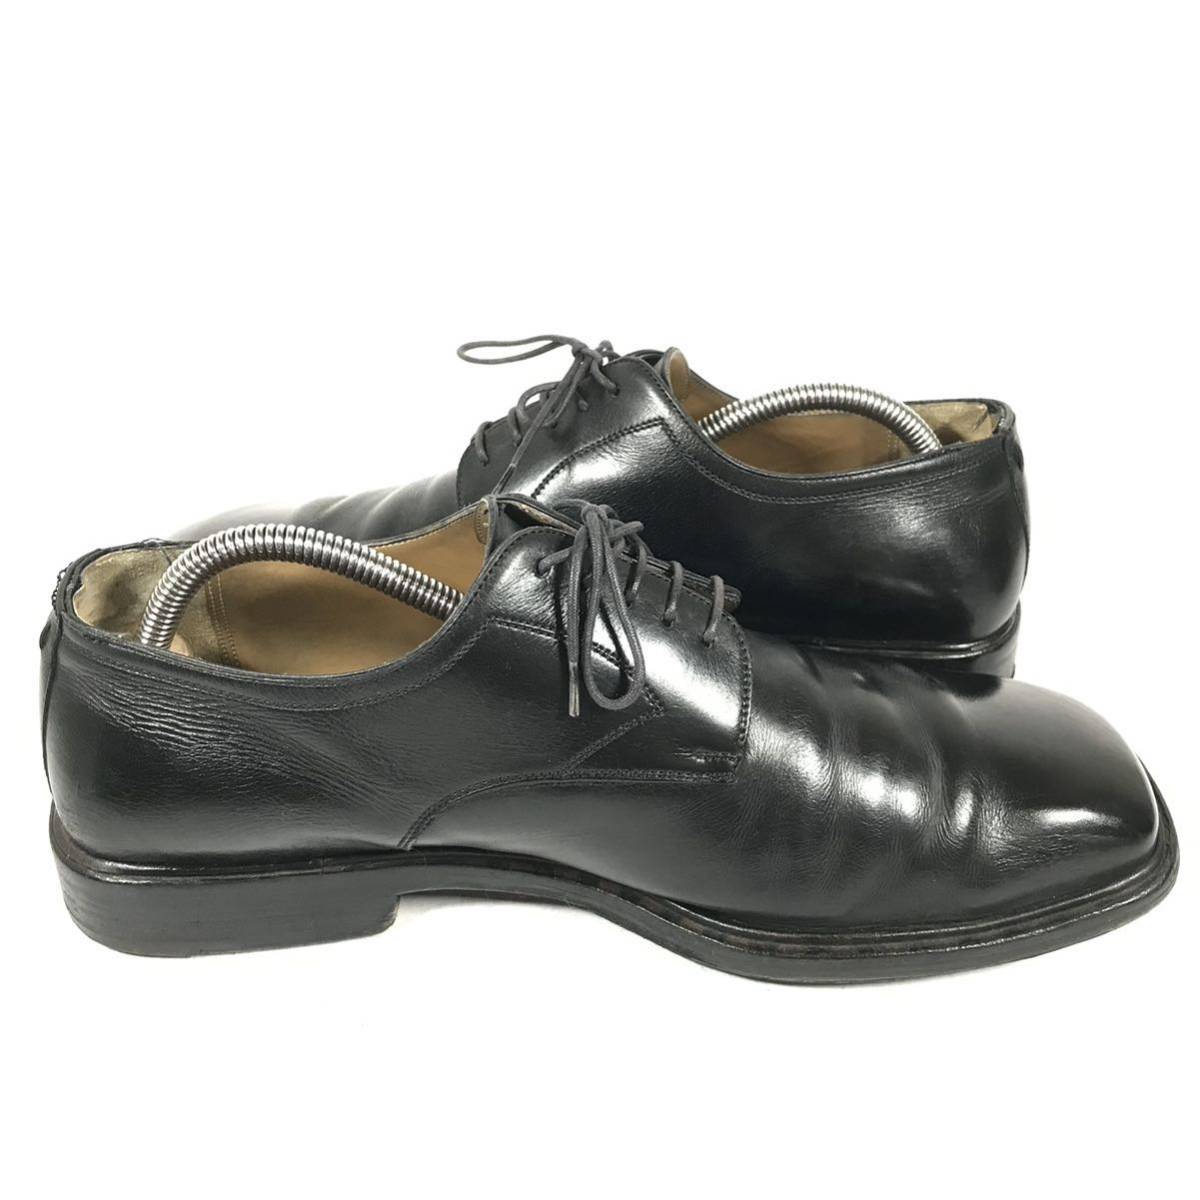 【ルイヴィトン】本物 LOUIS VUITTON 靴 26.5cm 黒 ビジネスシューズ 外羽根式 本革 レザー 男性用 メンズ イタリア製 8_画像7